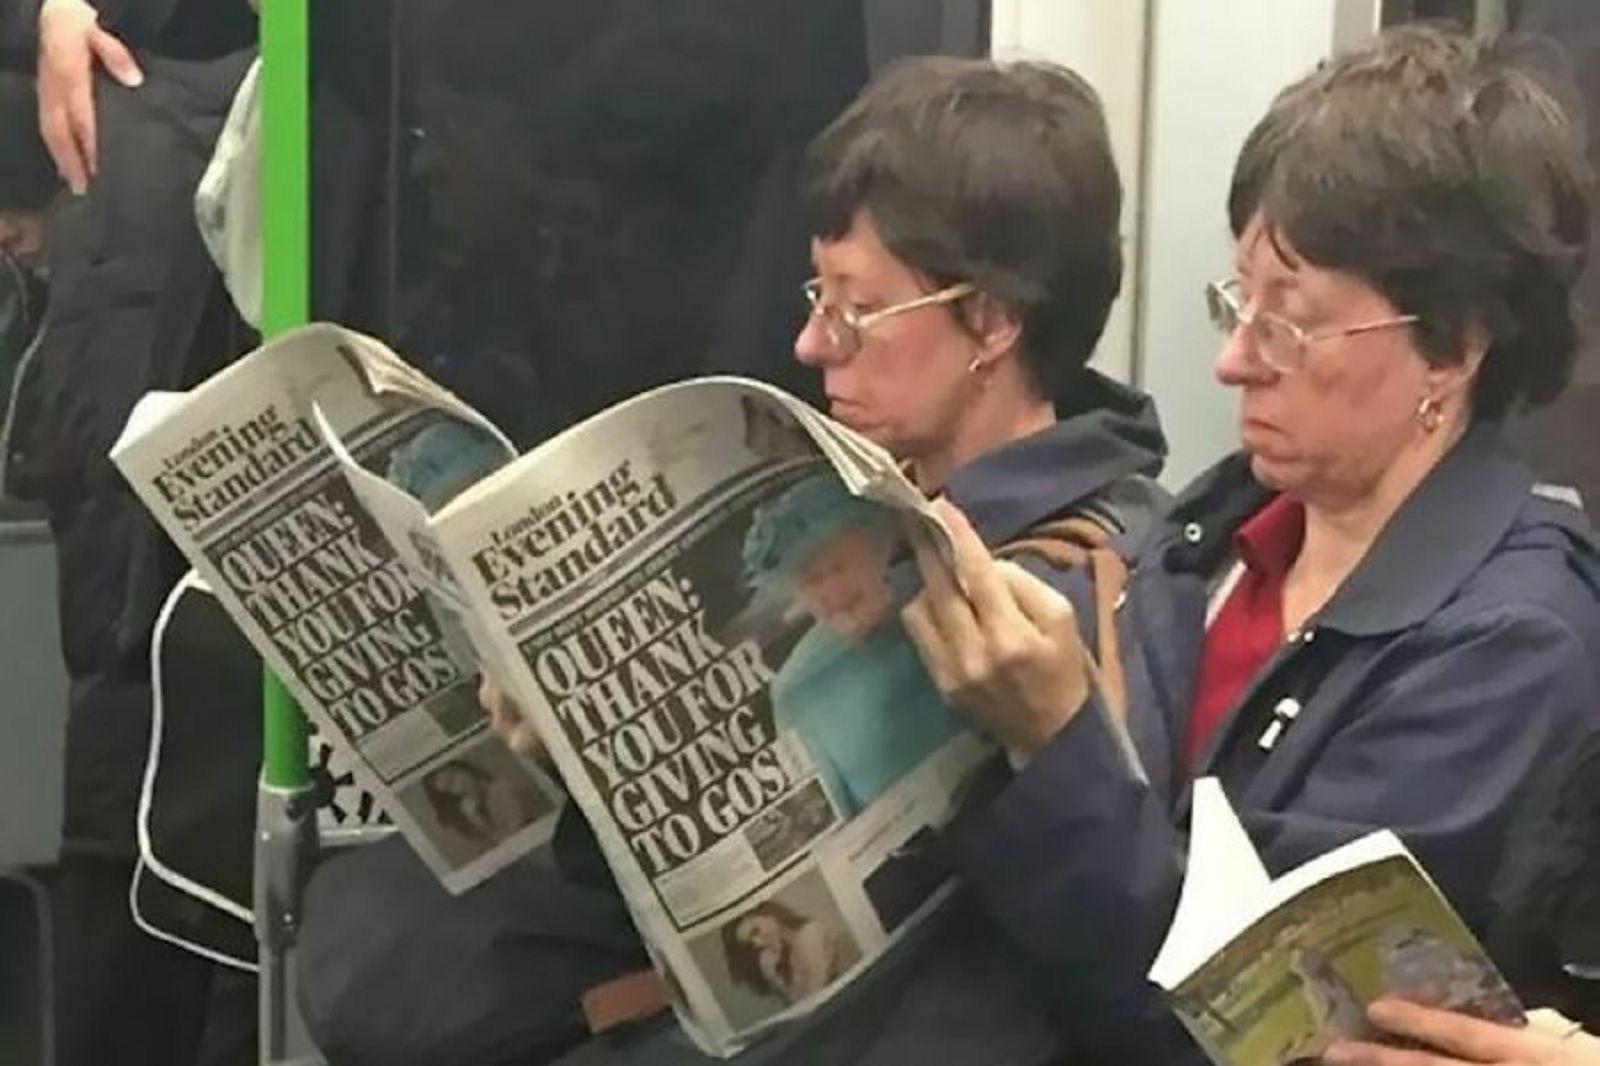 doppelgangers on a train